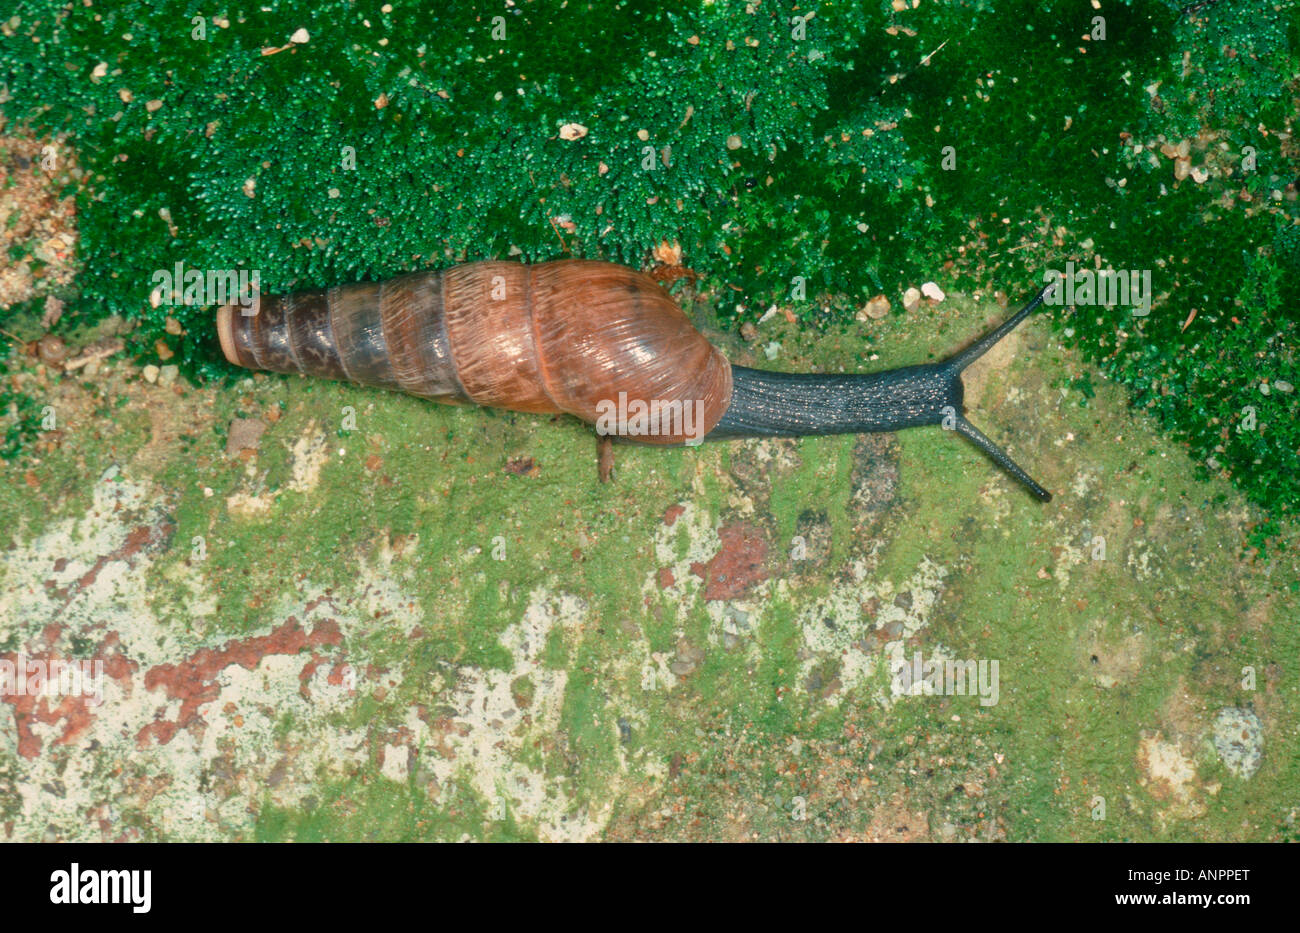 Decollate Snail, Rumina decollata Stock Photo